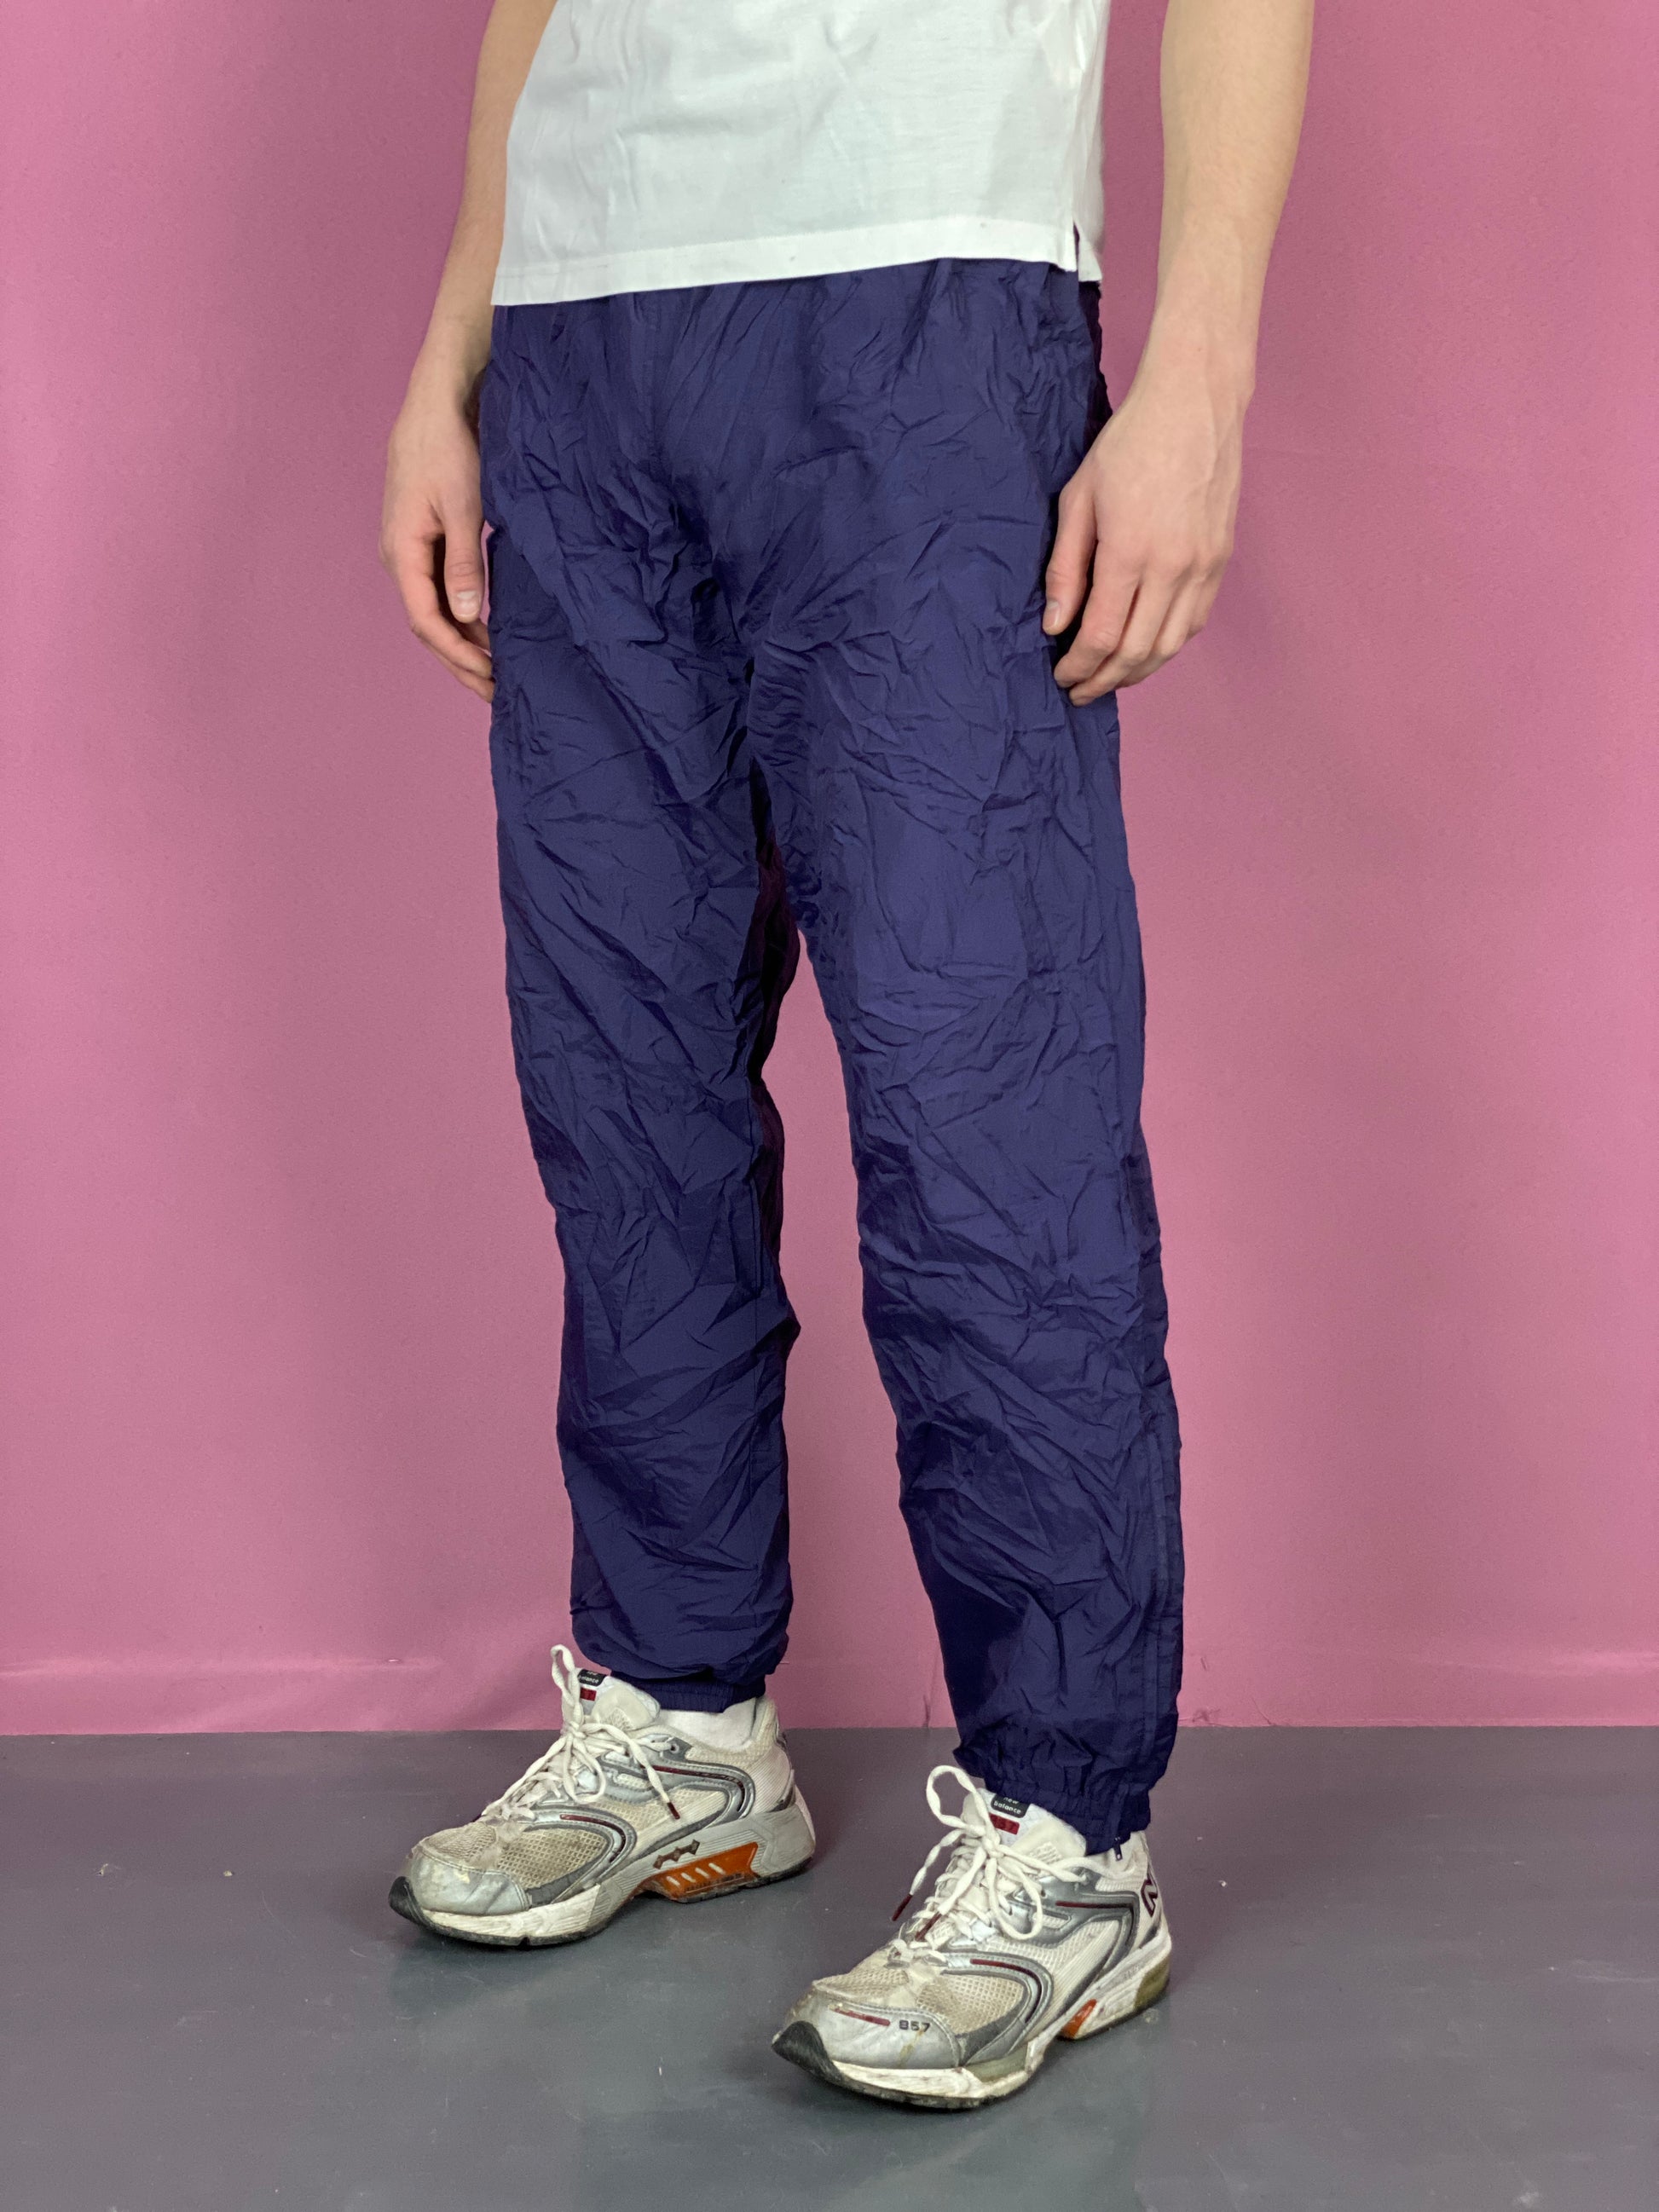 90s Karakal Vintage Men's Track Pants - XL Navy Blue Nylon